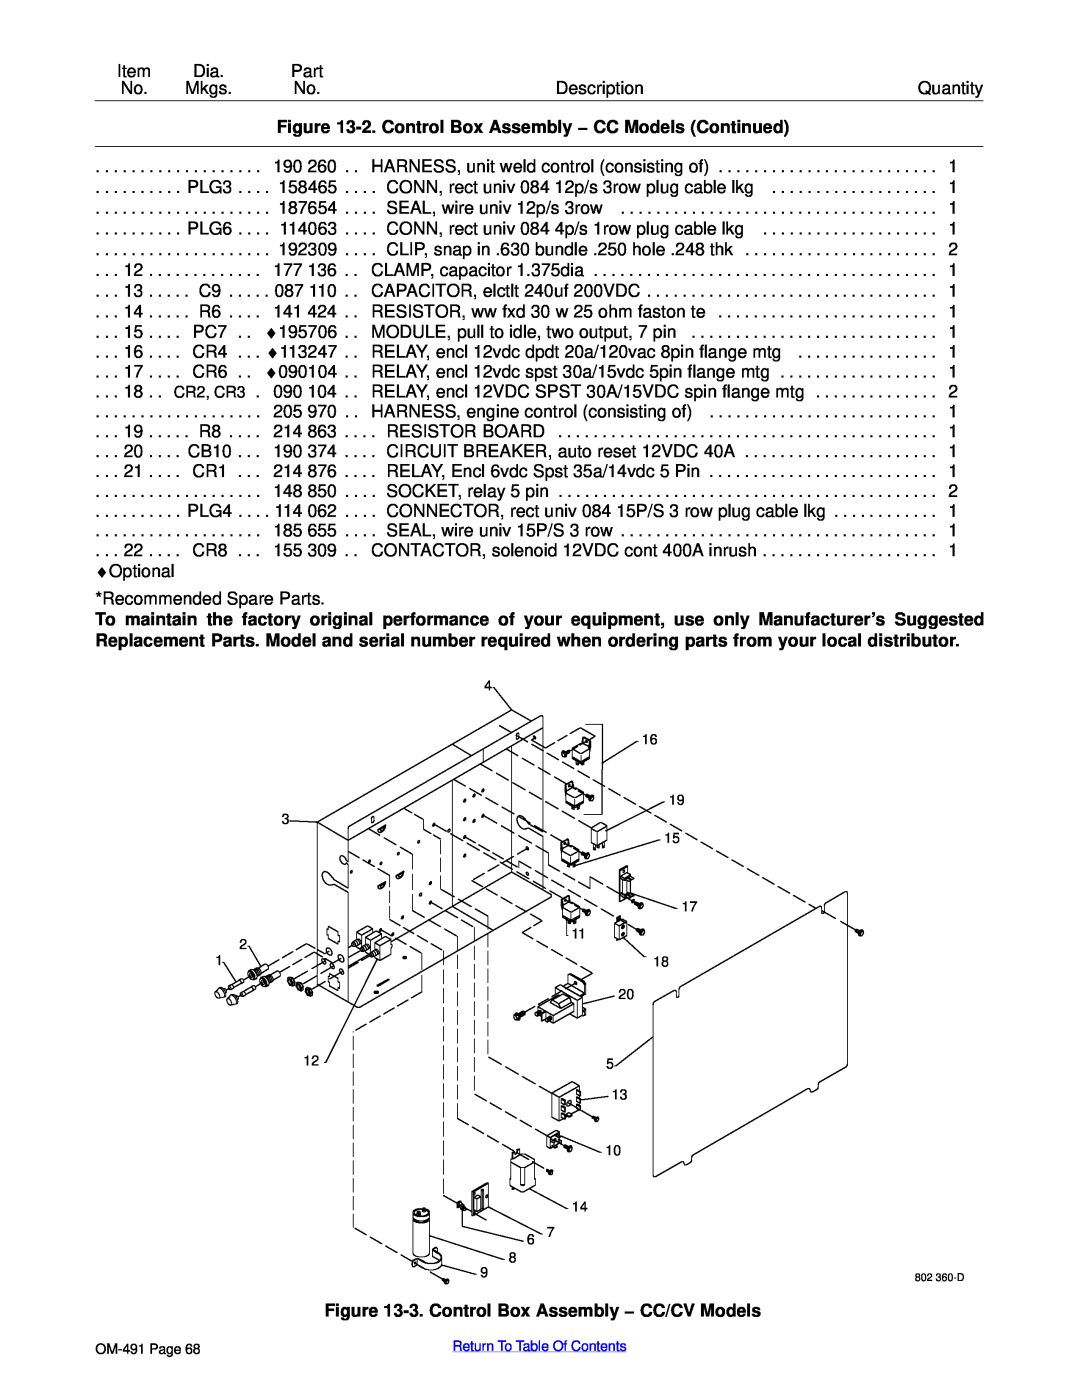 Miller Electric Big Blue 402P manual 2. Control Box Assembly − CC Models Continued, 3. Control Box Assembly − CC/CV Models 